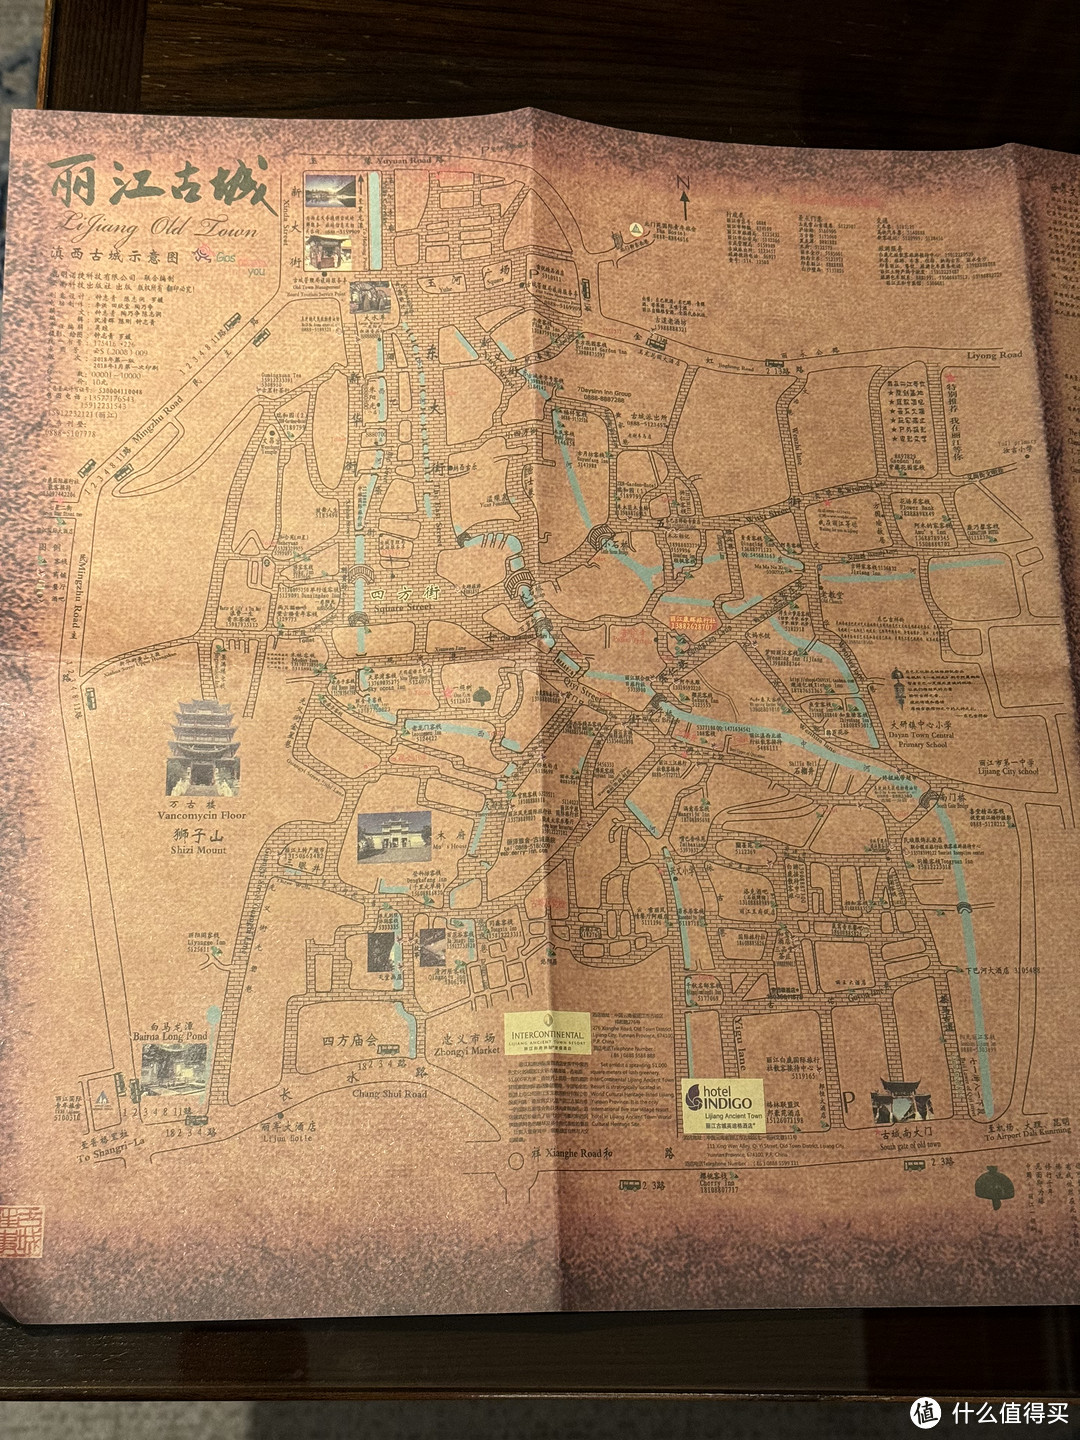 桌子上，有个类似羊皮纸的古城地图